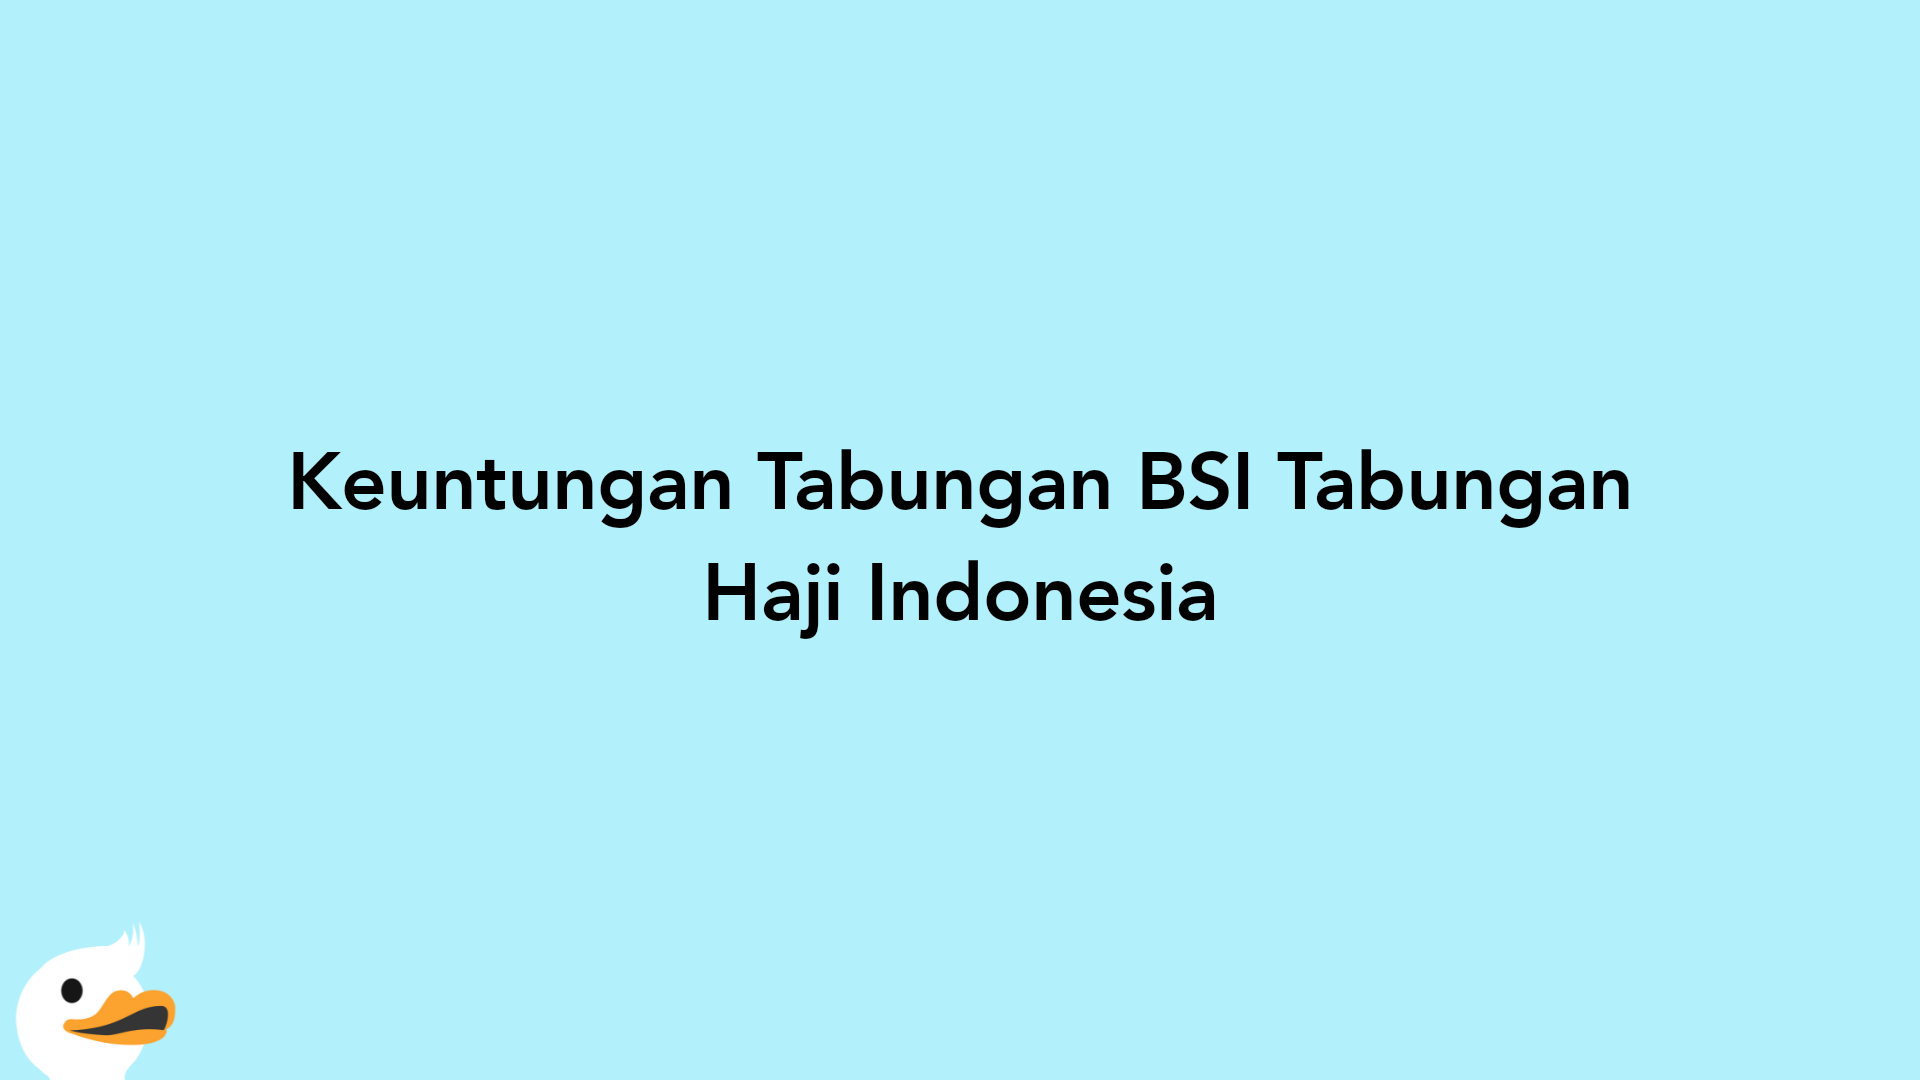 Keuntungan Tabungan BSI Tabungan Haji Indonesia